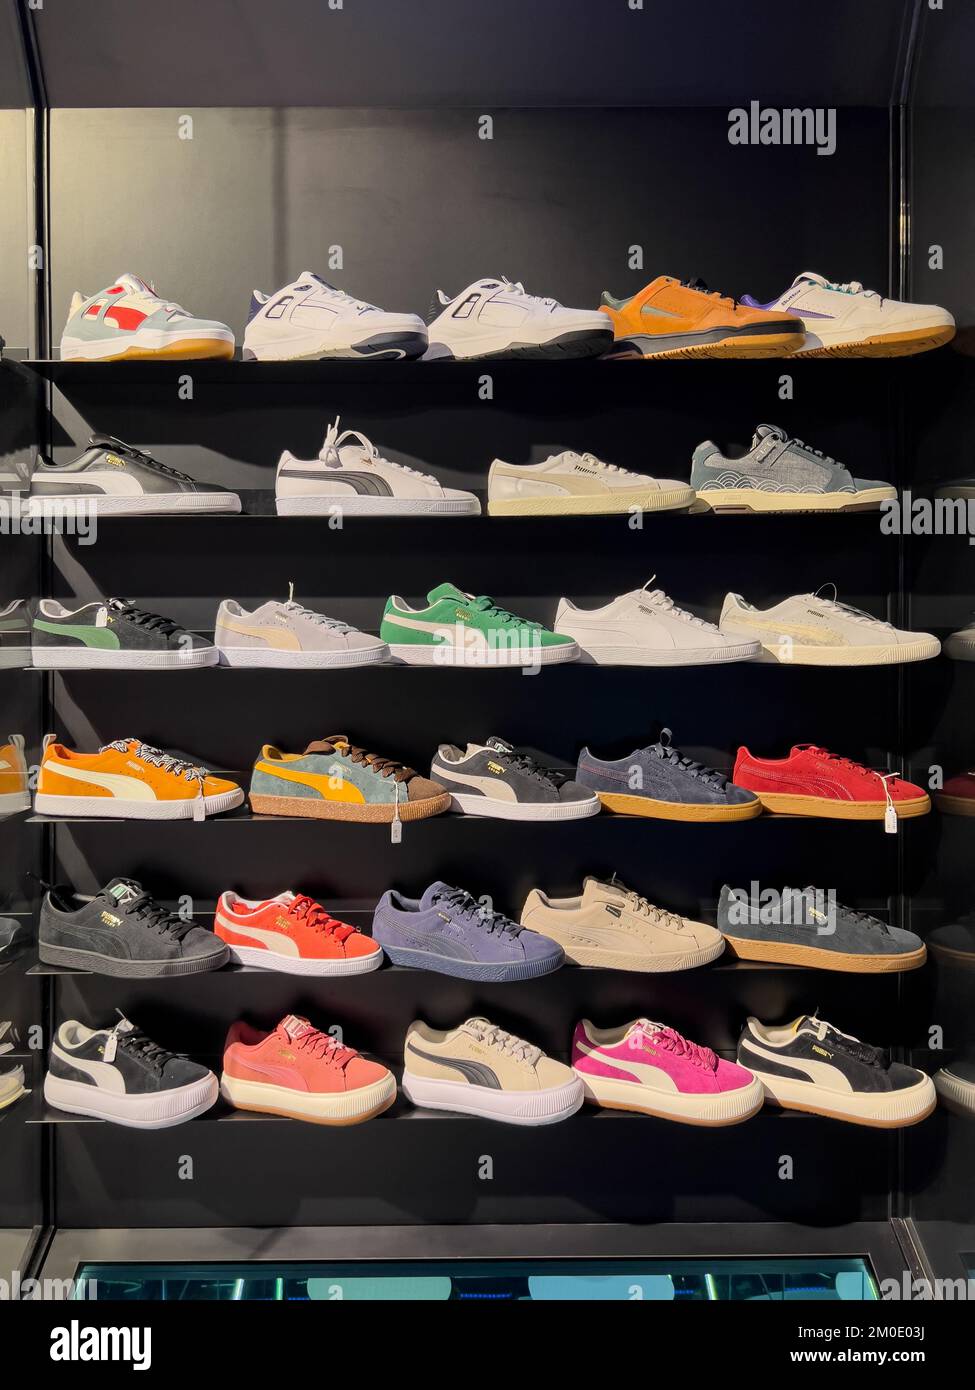 Esposizione ordinata del modello di scarpe Puma sugli scaffali per consentire al cliente di osservare o ammirare il design elegante. Foto Stock